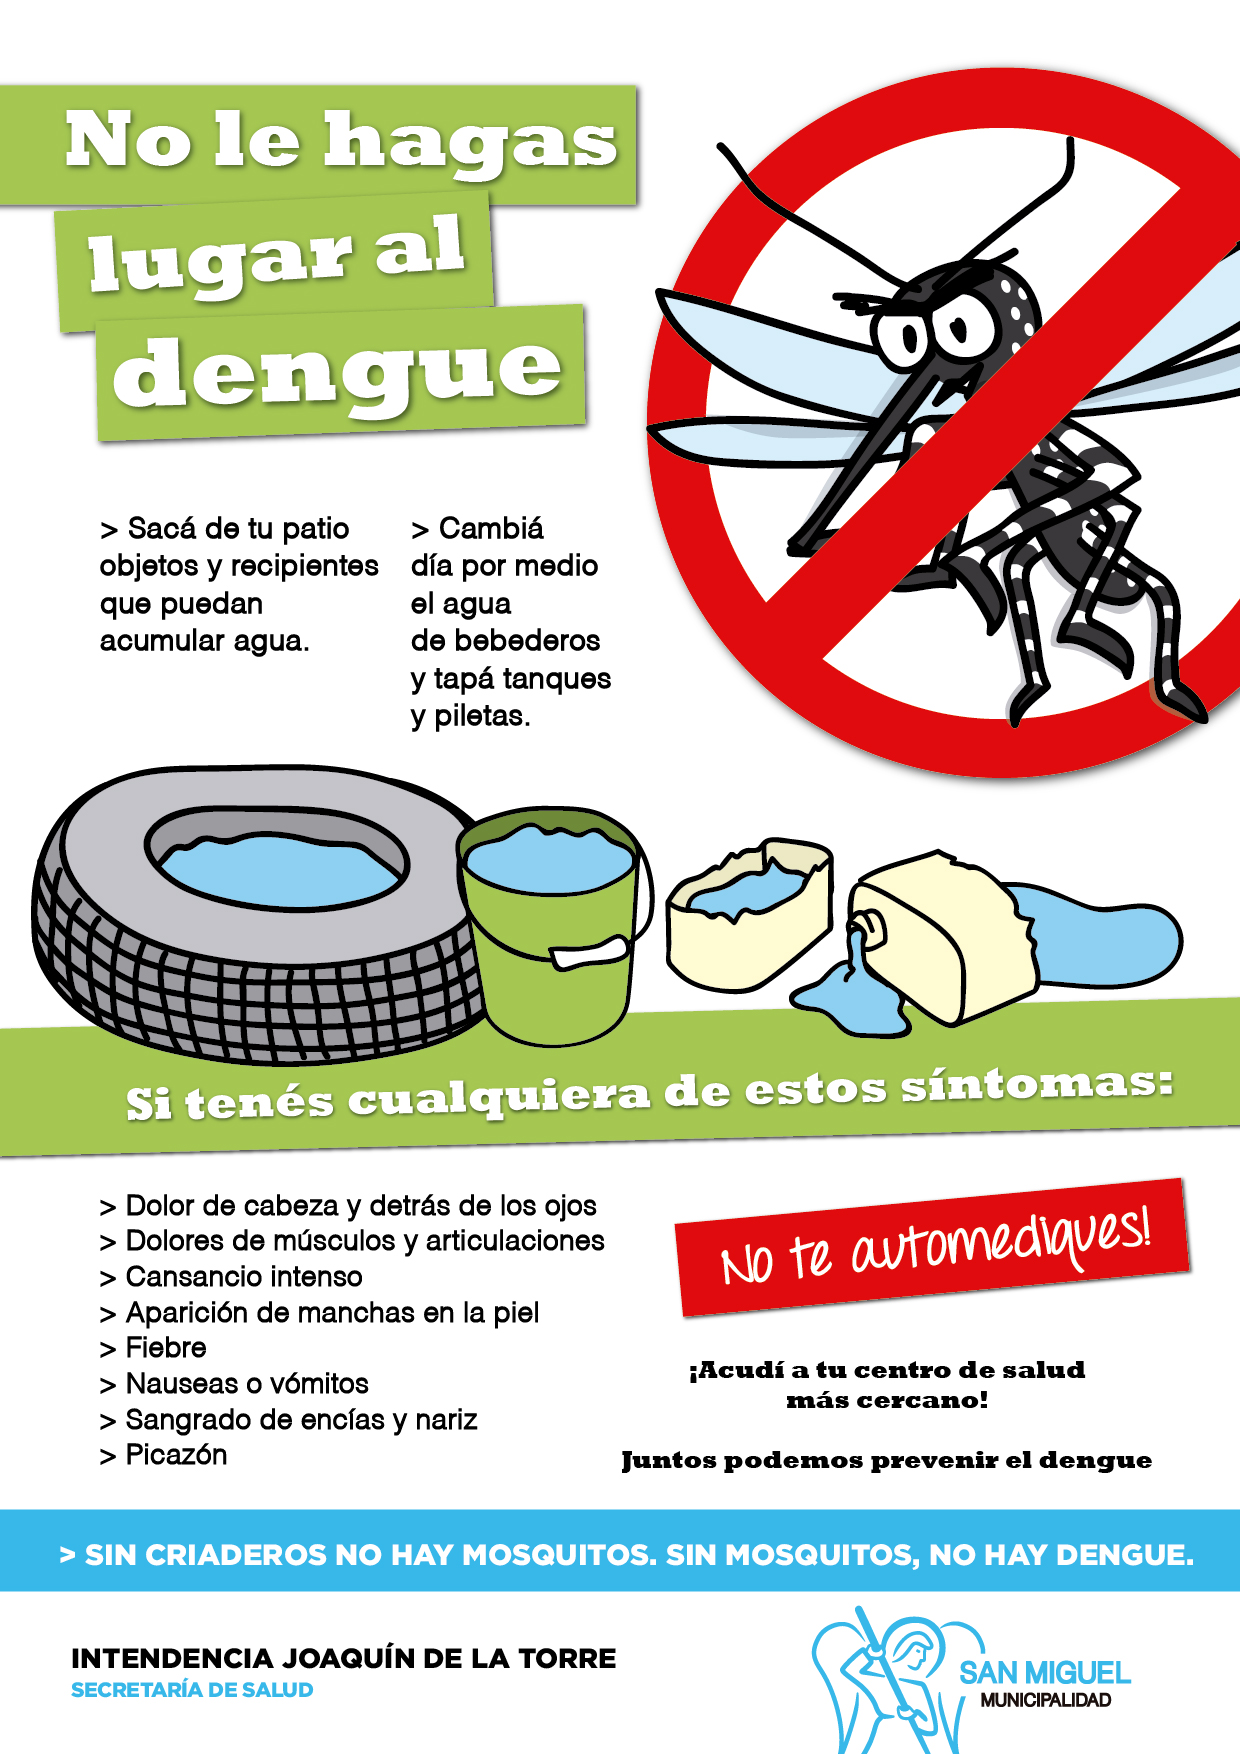 Dengue: San Miguel continúa con su campaña de prevención y fumigaciones